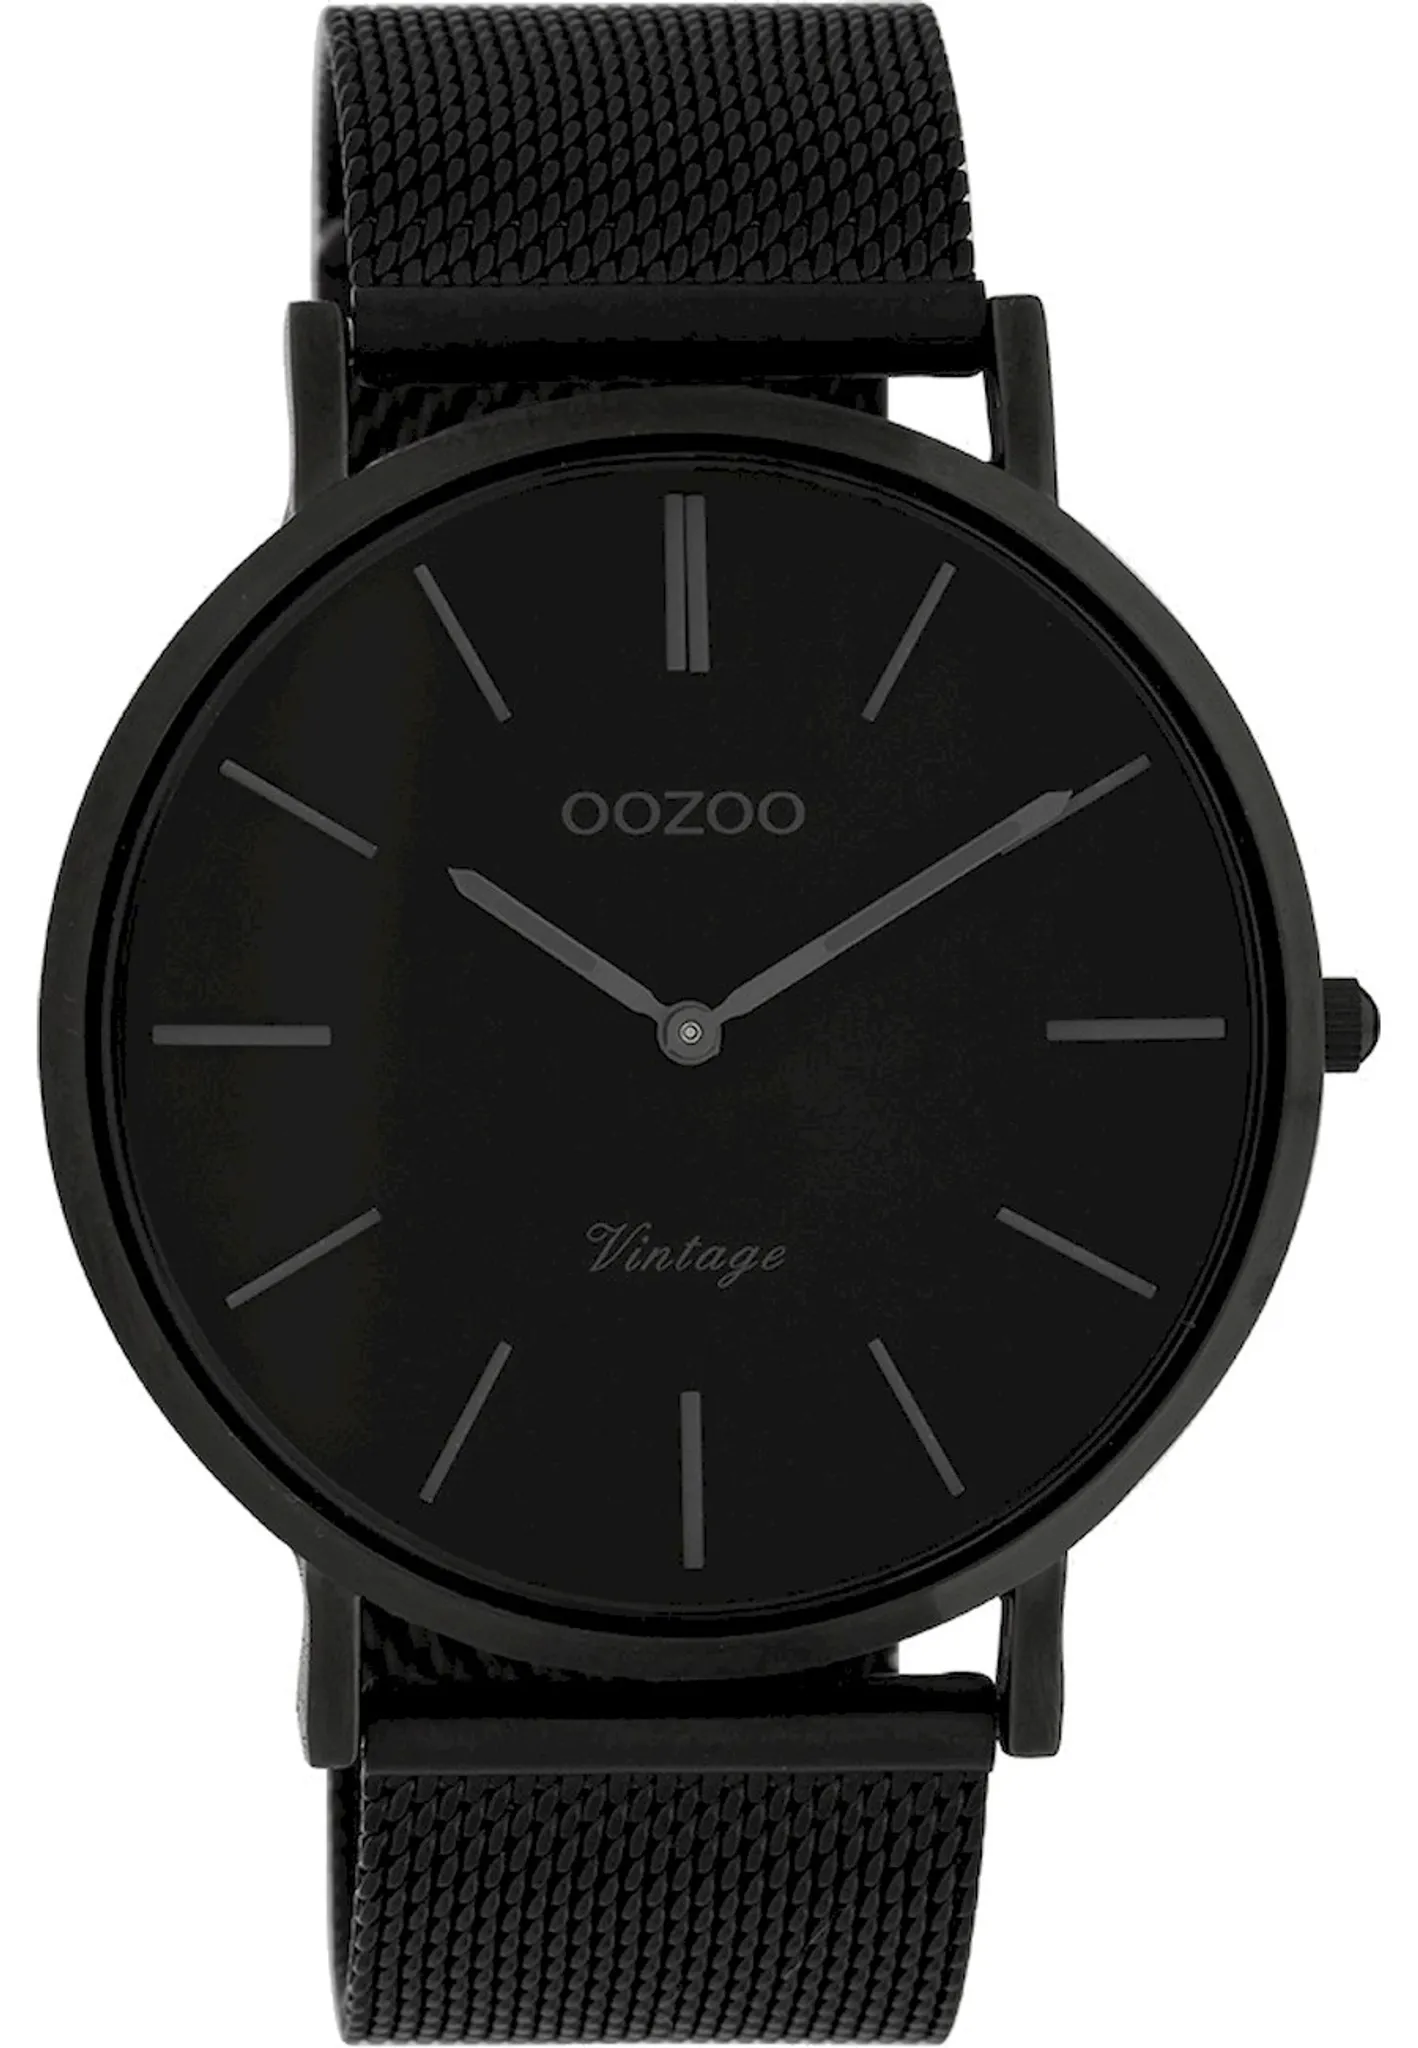 Herrenuhr Armbanduhr C9932 Vintage Oozoo